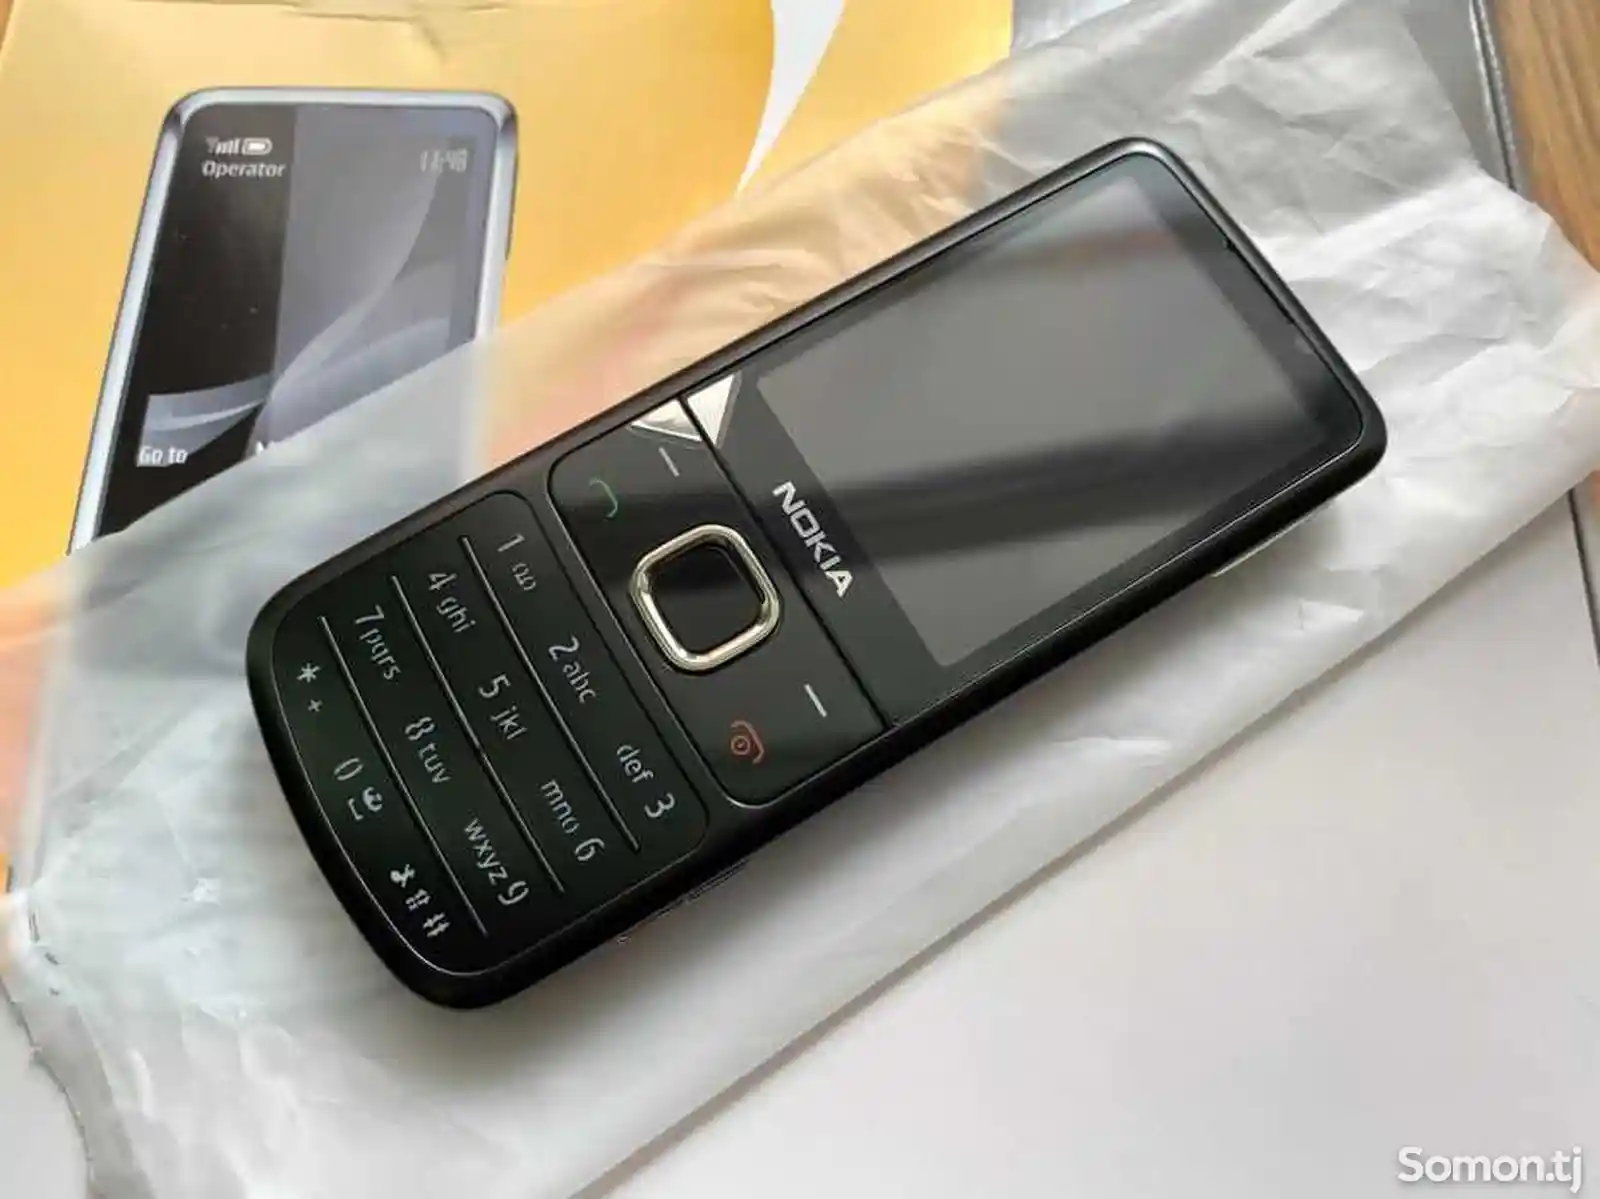 Nokia 6700 classic-2